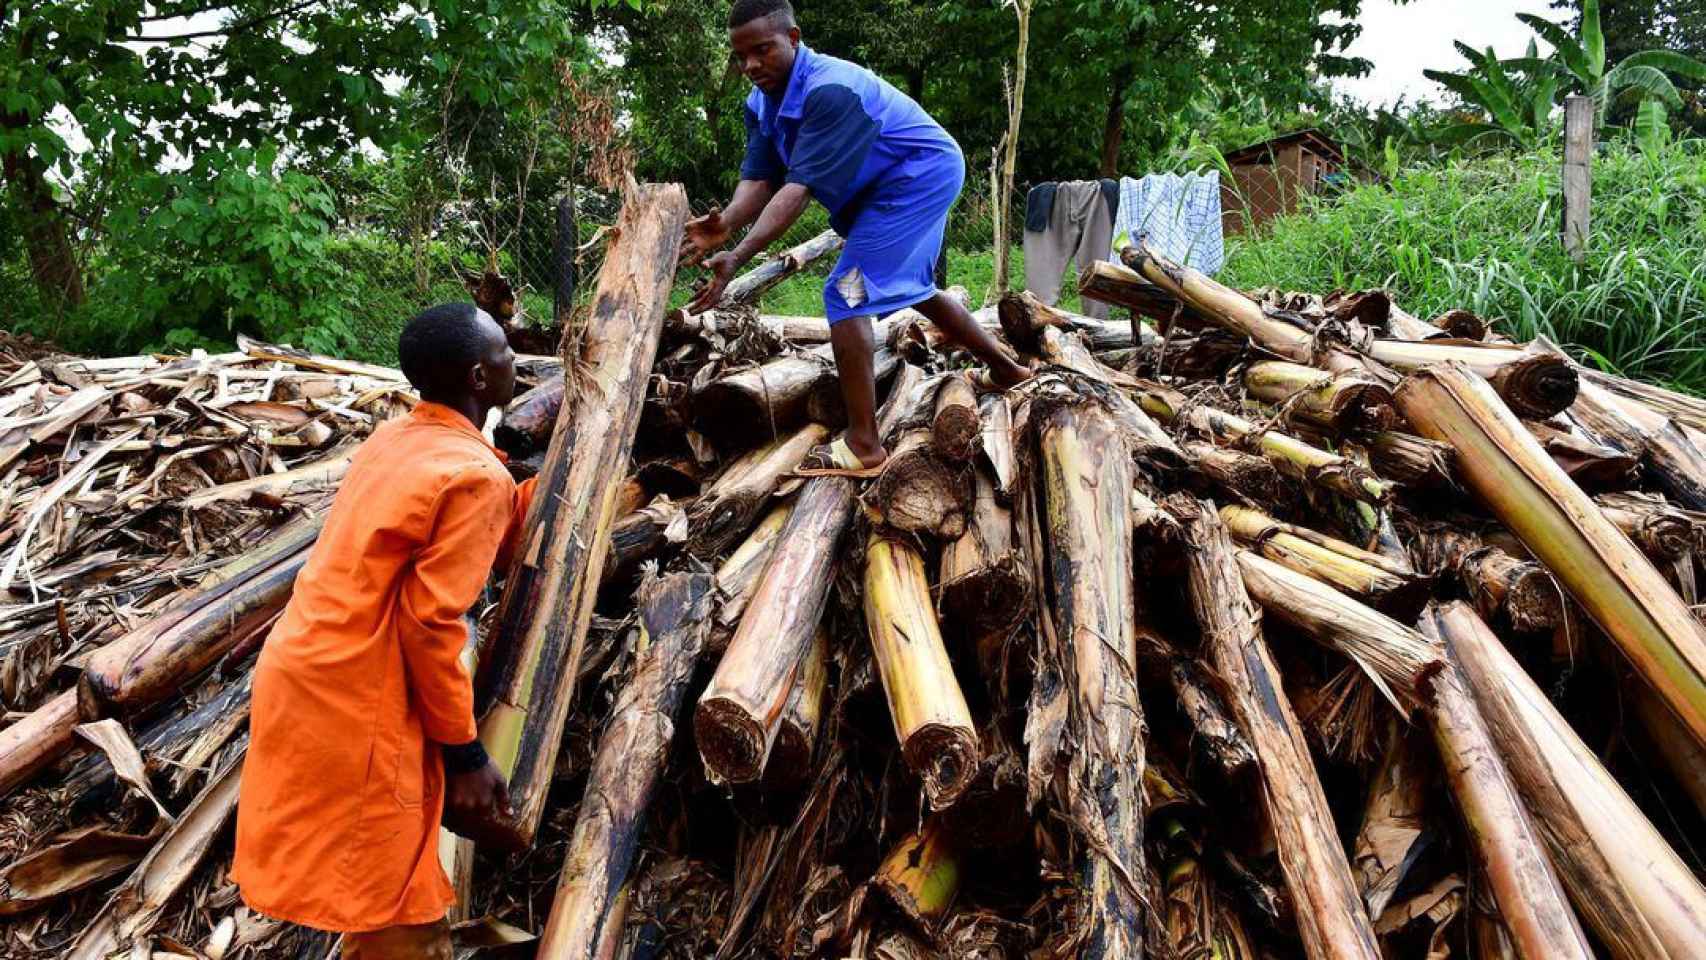 Trabajadores clasifican tallos de plátano recién cortados en una plantación para extraer la fibra de las vainas de los troncos.